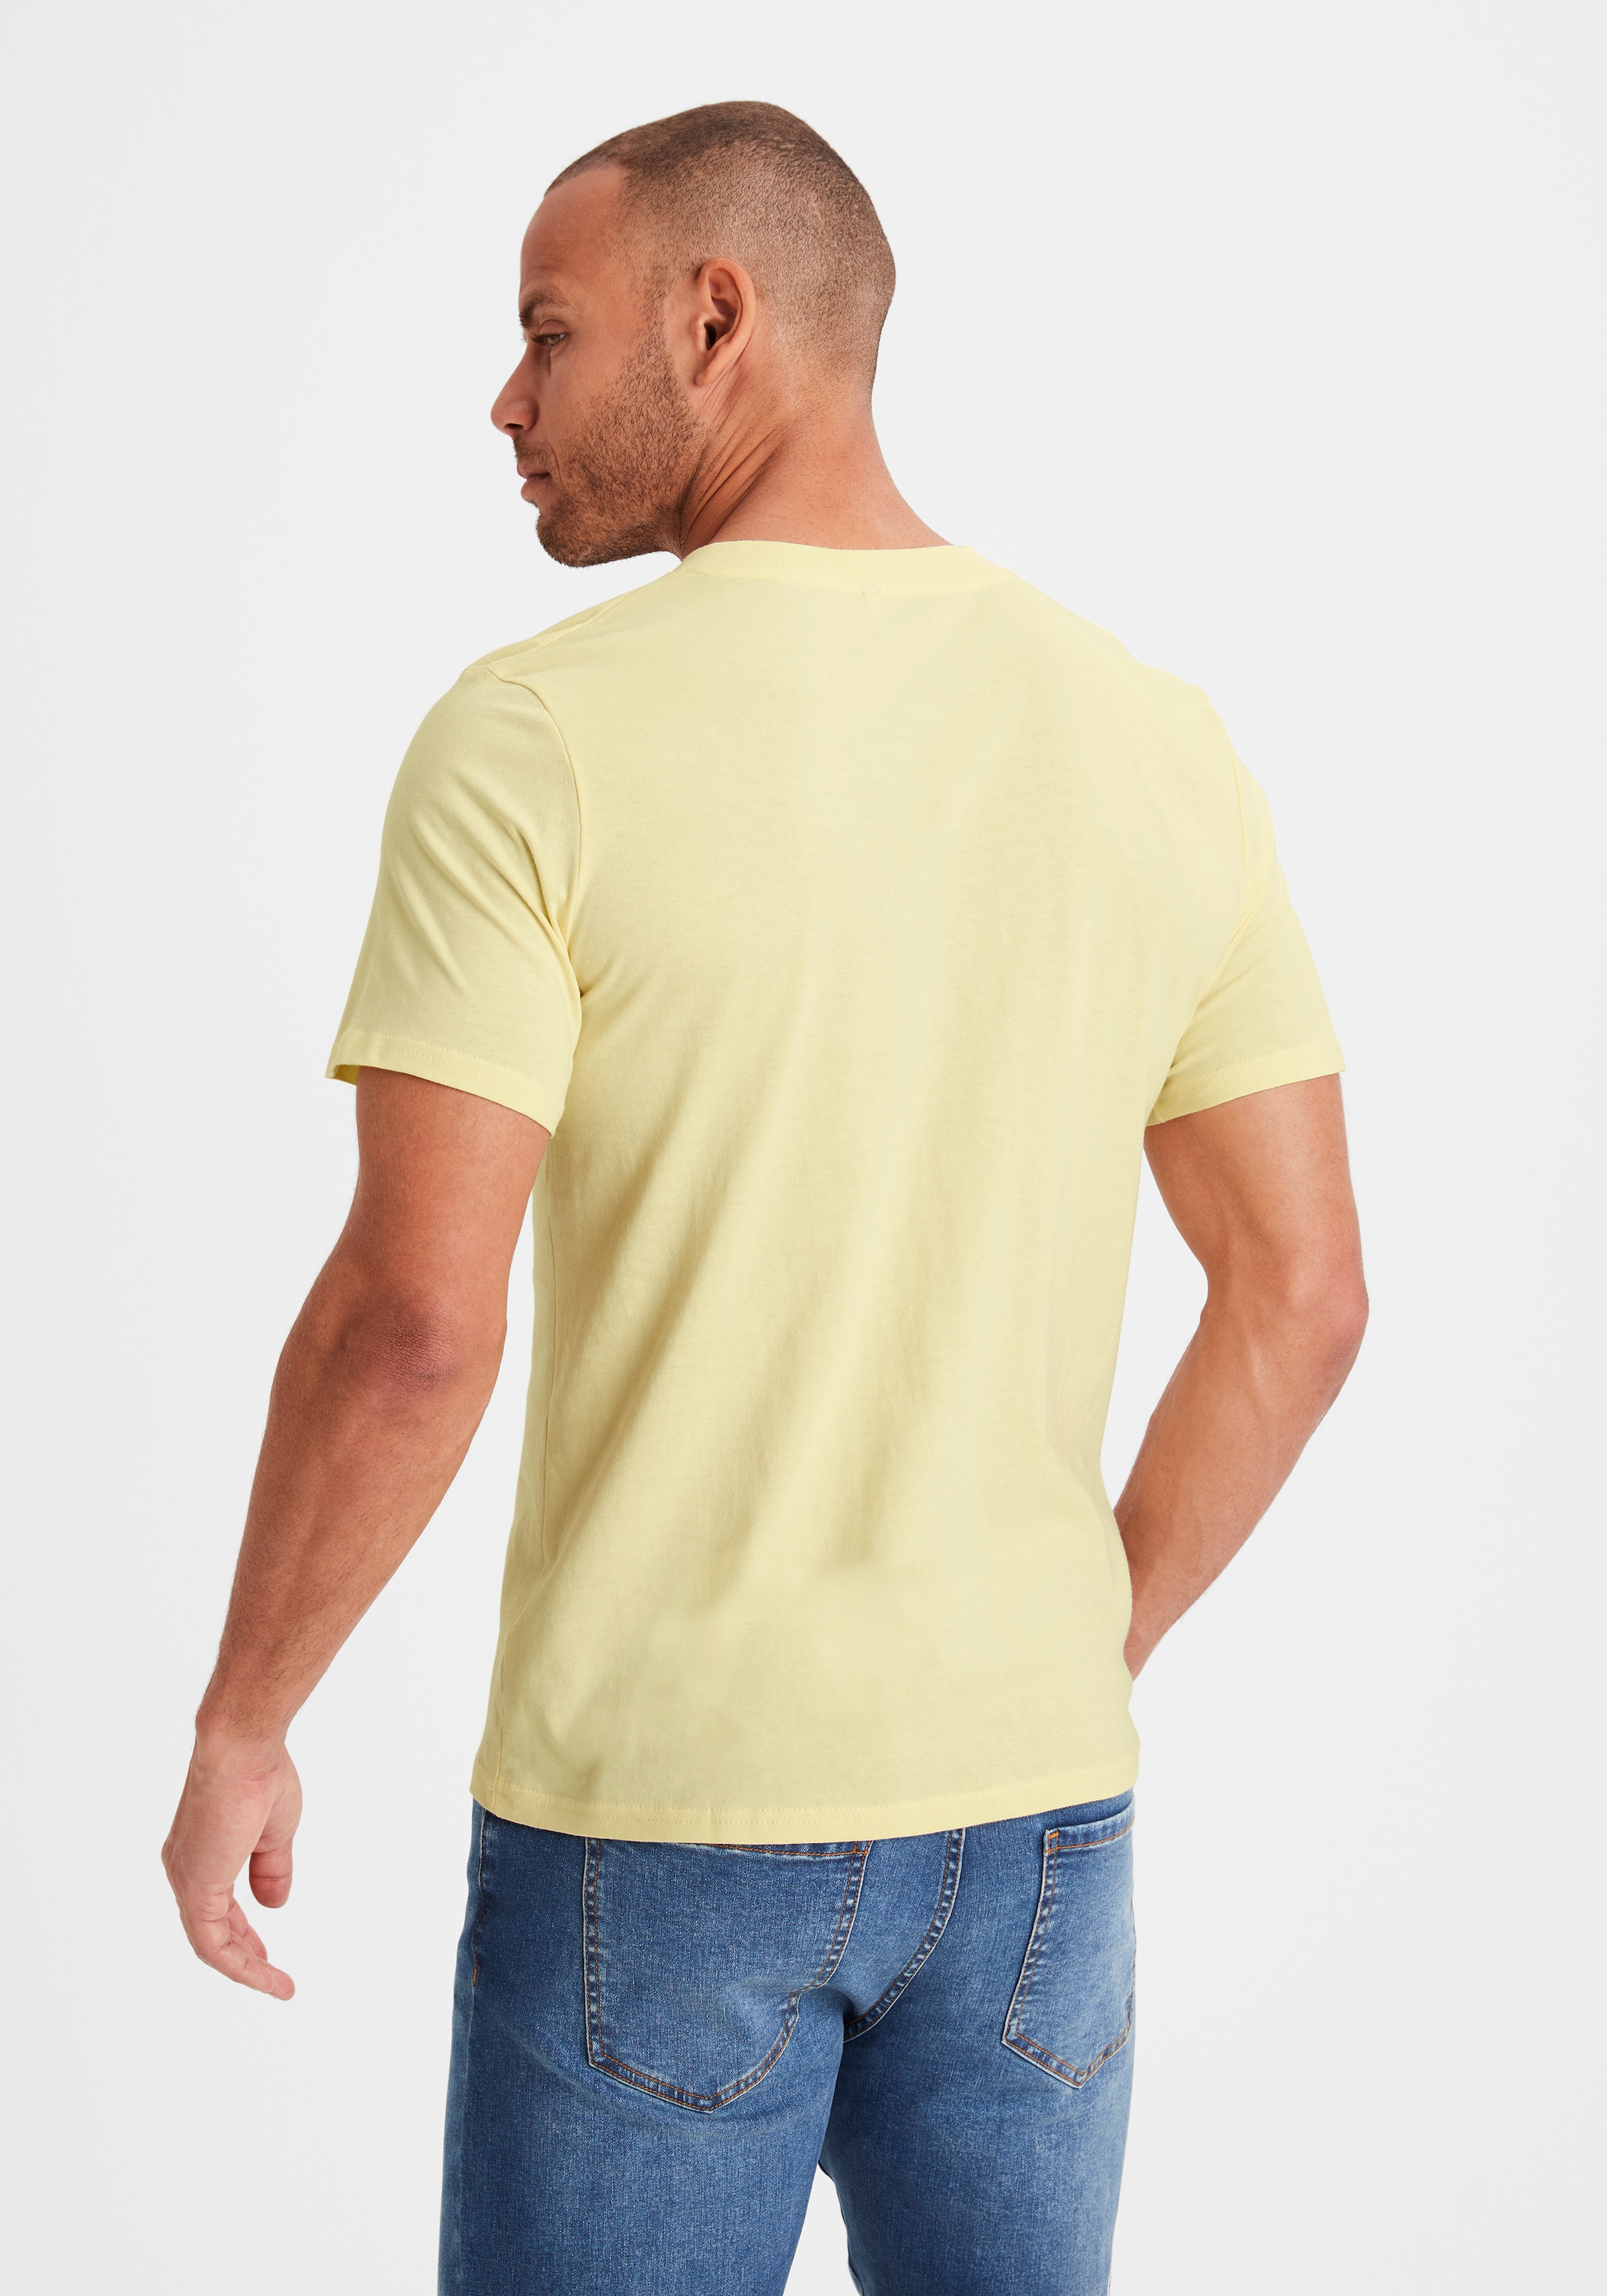 V-Shirt, Form kaufen in klassischer (2er-Pack), Must-Have KangaROOS ein online